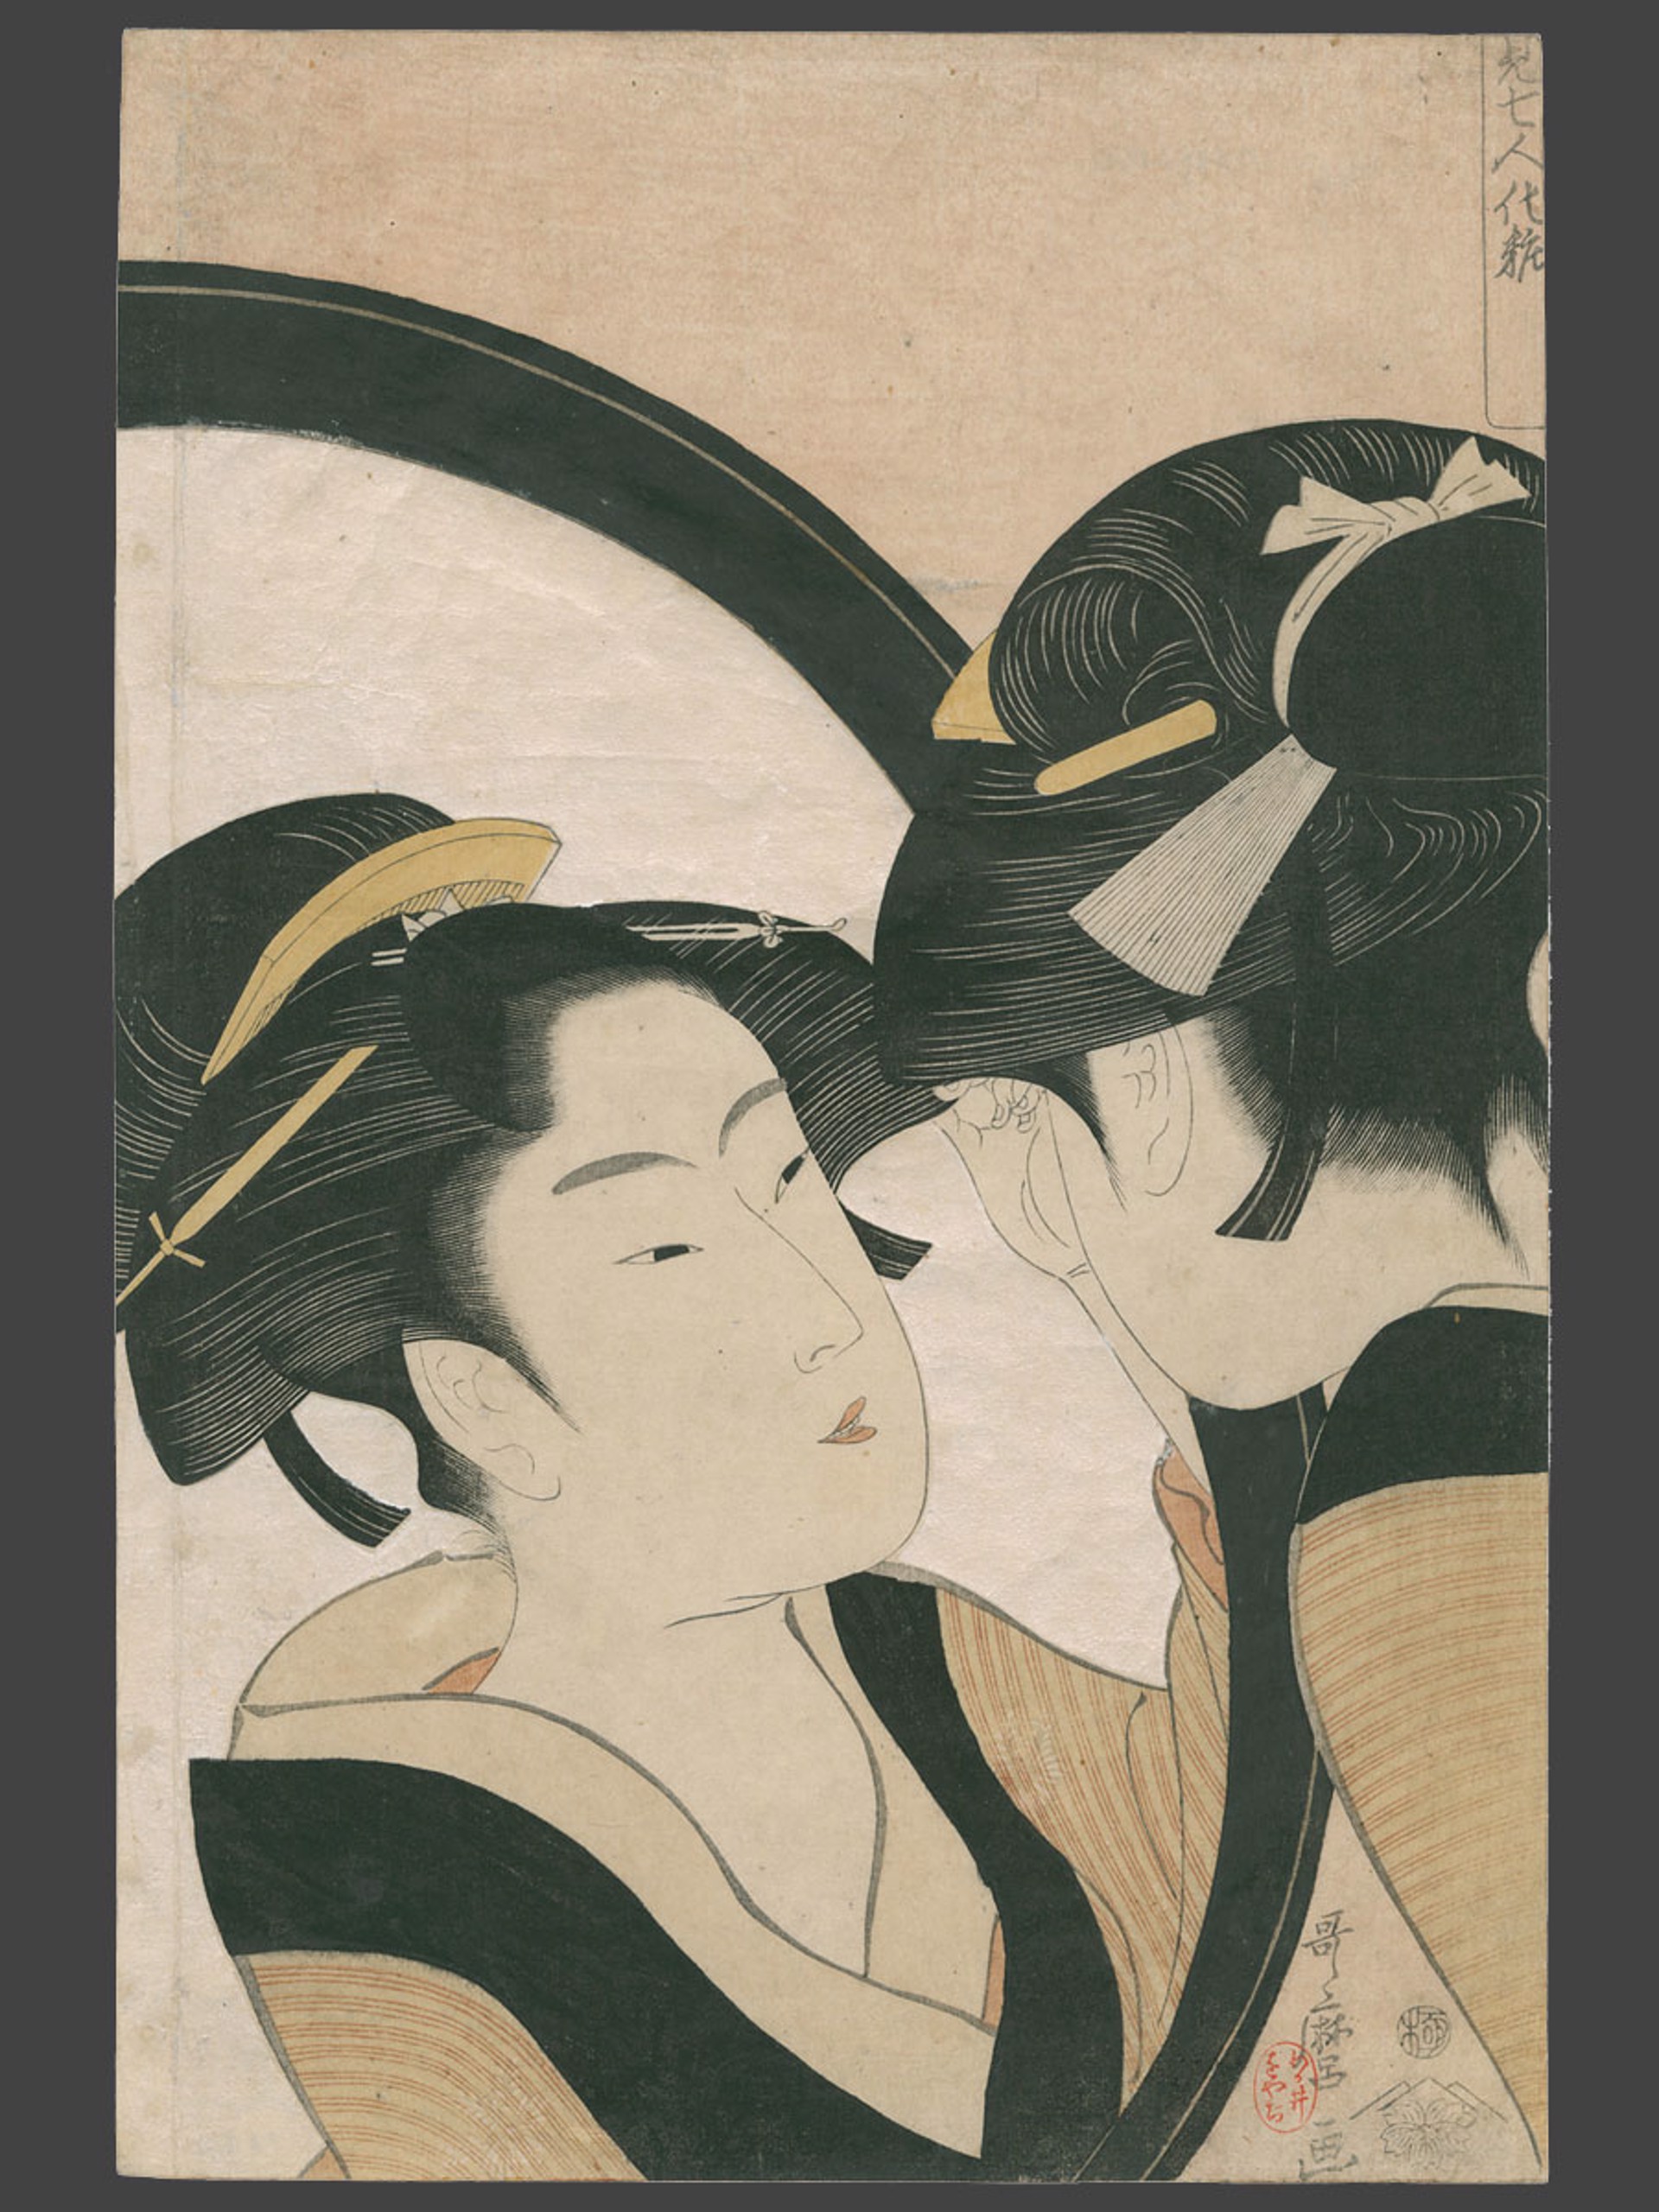 Naniwaya Okita Seven Women Applying Make-up Using a Full Length Mirror by Utamaro